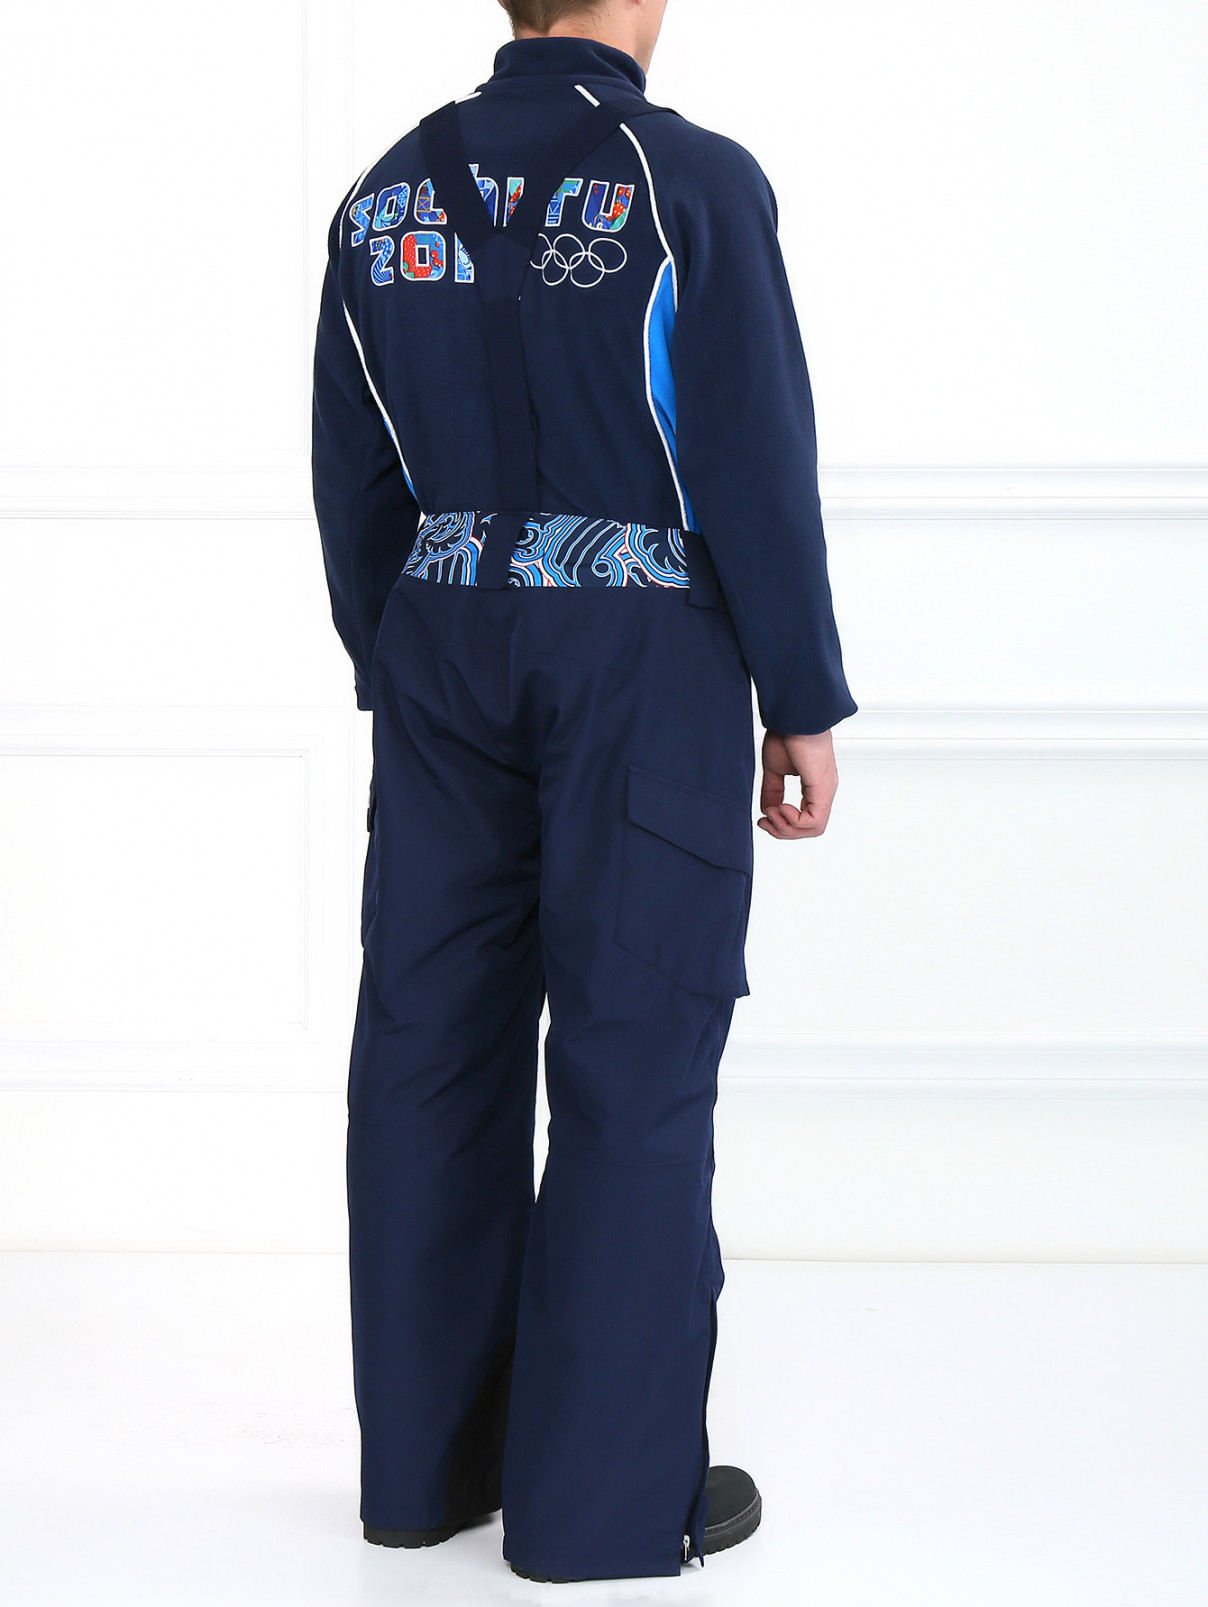 Брюки горнолыжные с накладными карманами Sochi 2014  –  Модель Верх-Низ1  – Цвет:  Синий